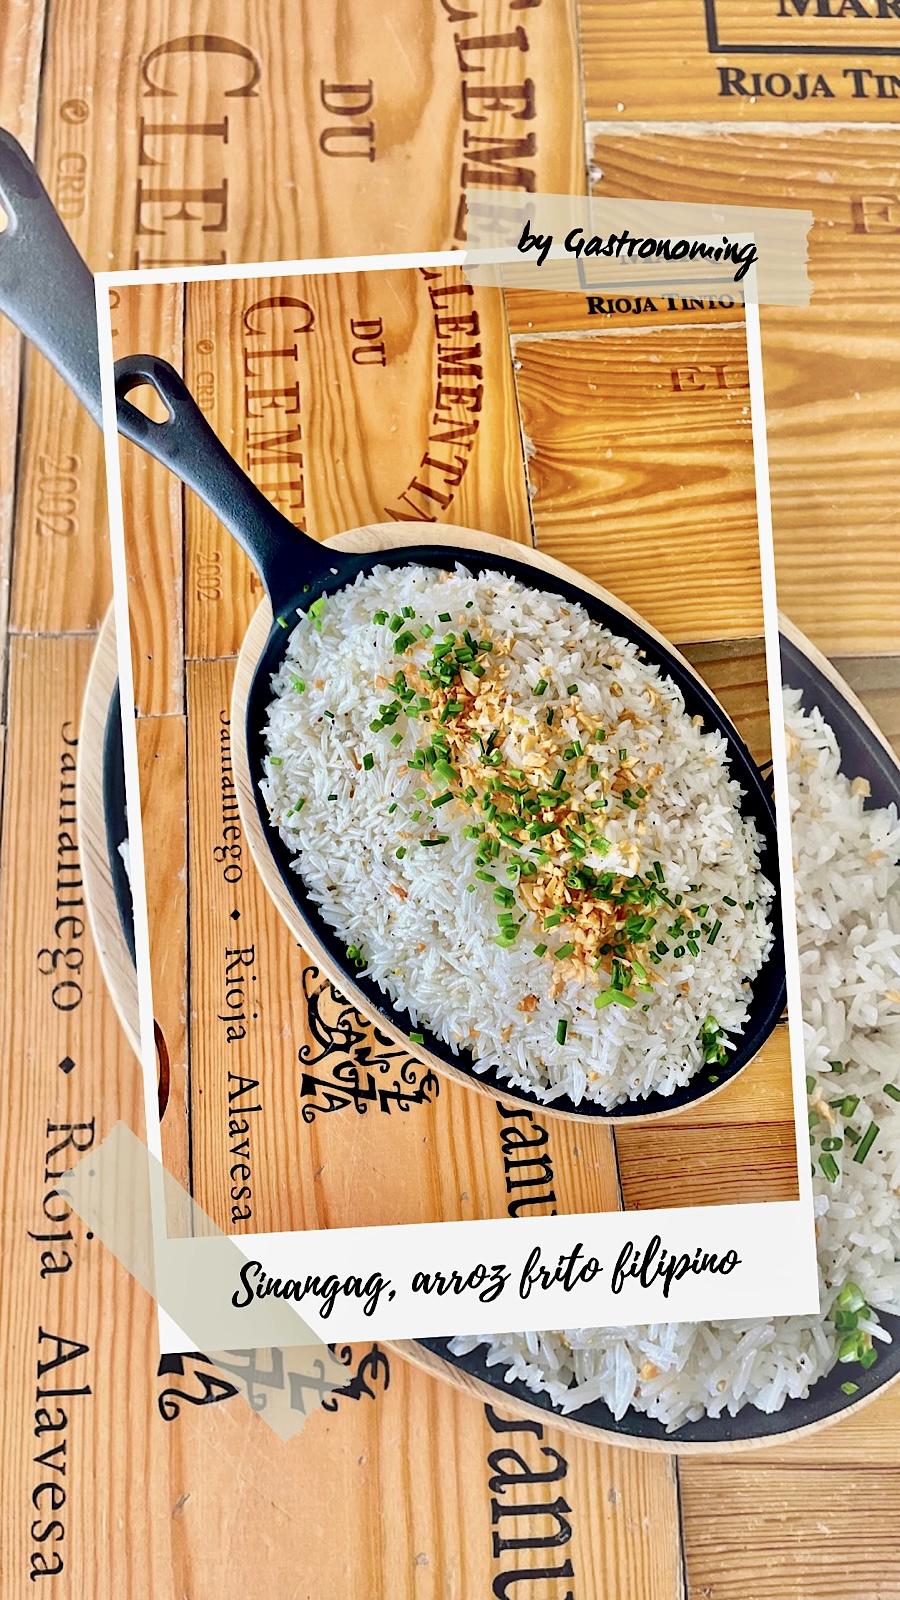 Sinangag, el arroz frito filipino con ajo que te conquistará